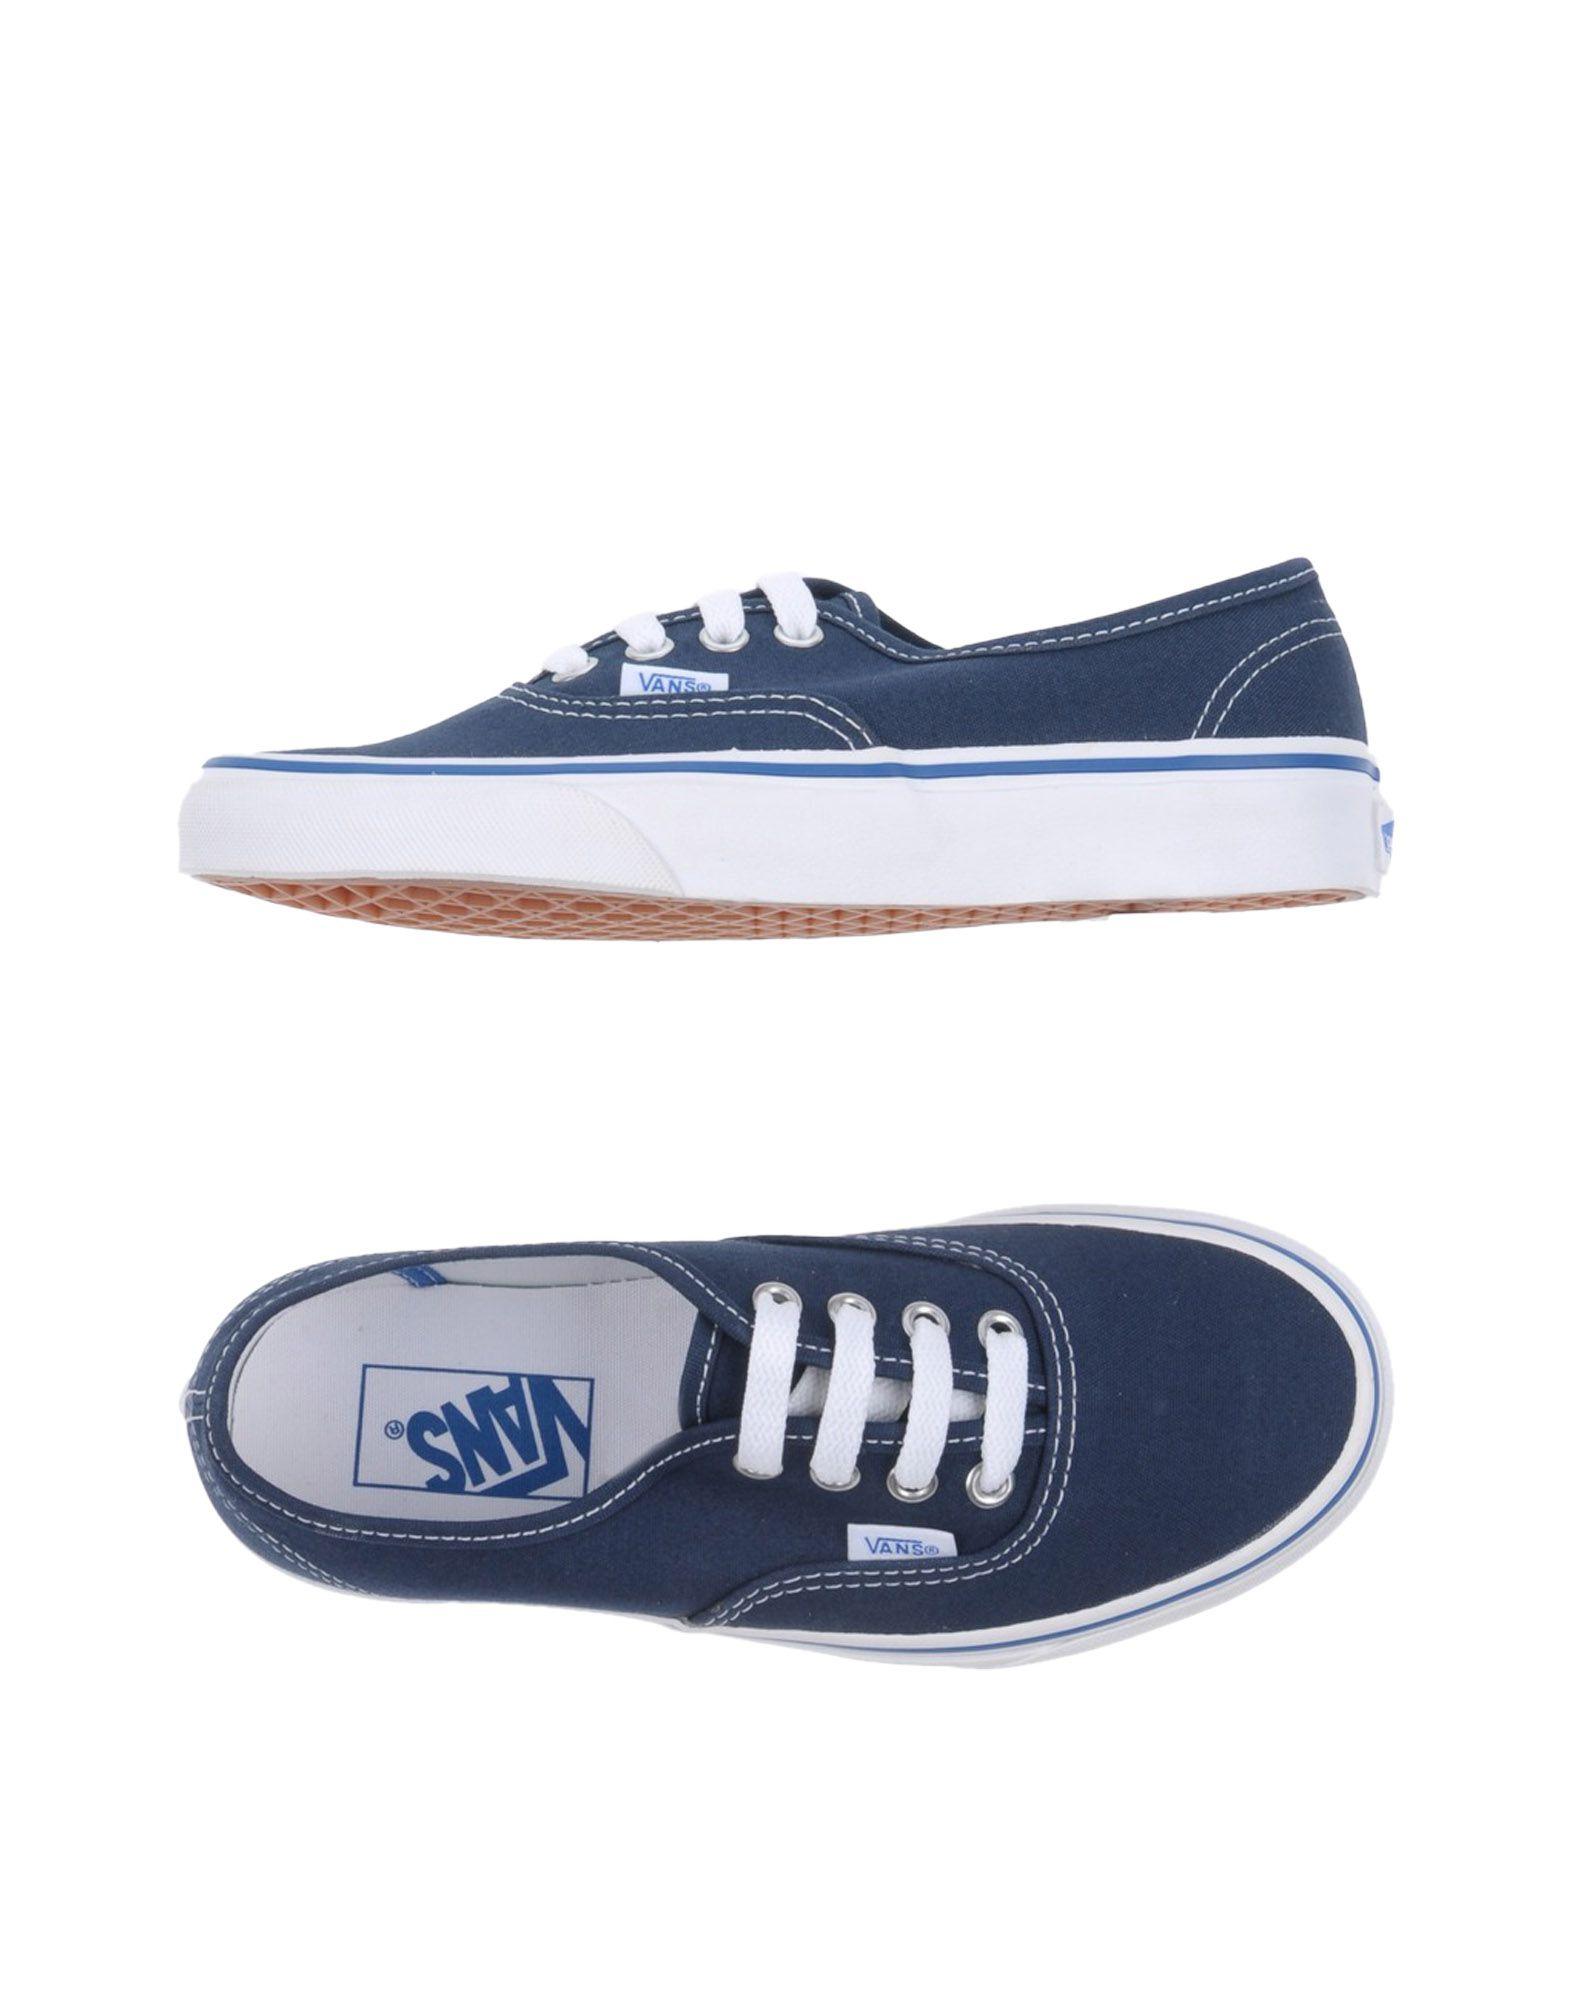 VANS Sneakers Dark blue women Footwear, vans tumblr background